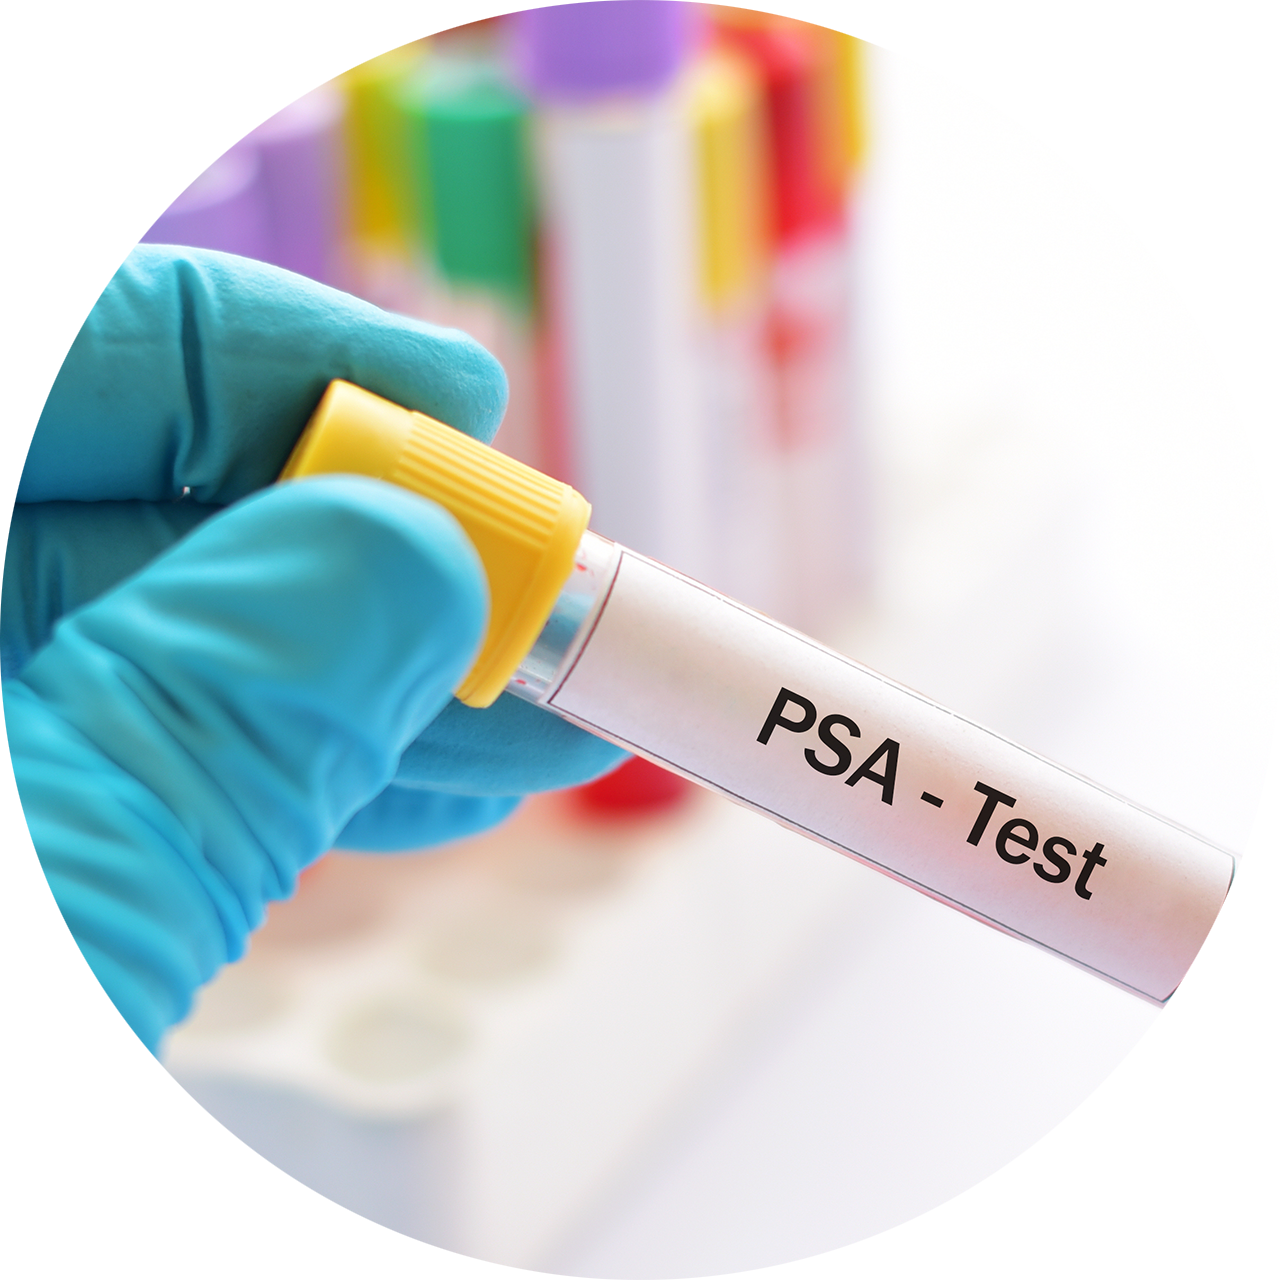 PSA-Test zur Früherkennung von Prostatakrebs